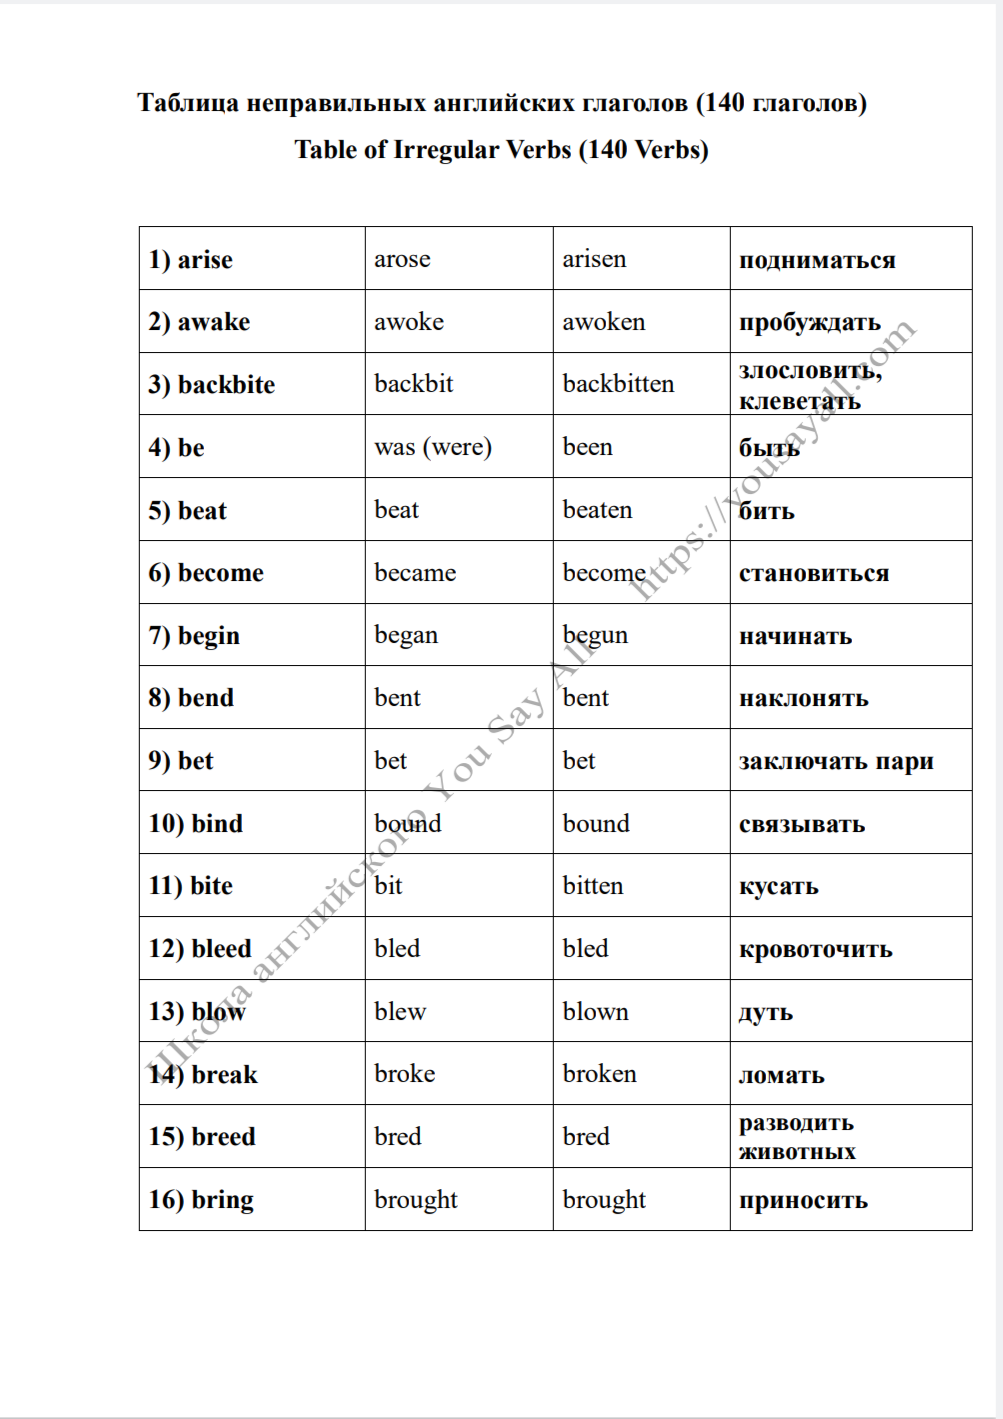 английские неправильные глаголы с переводом и озвучиванием